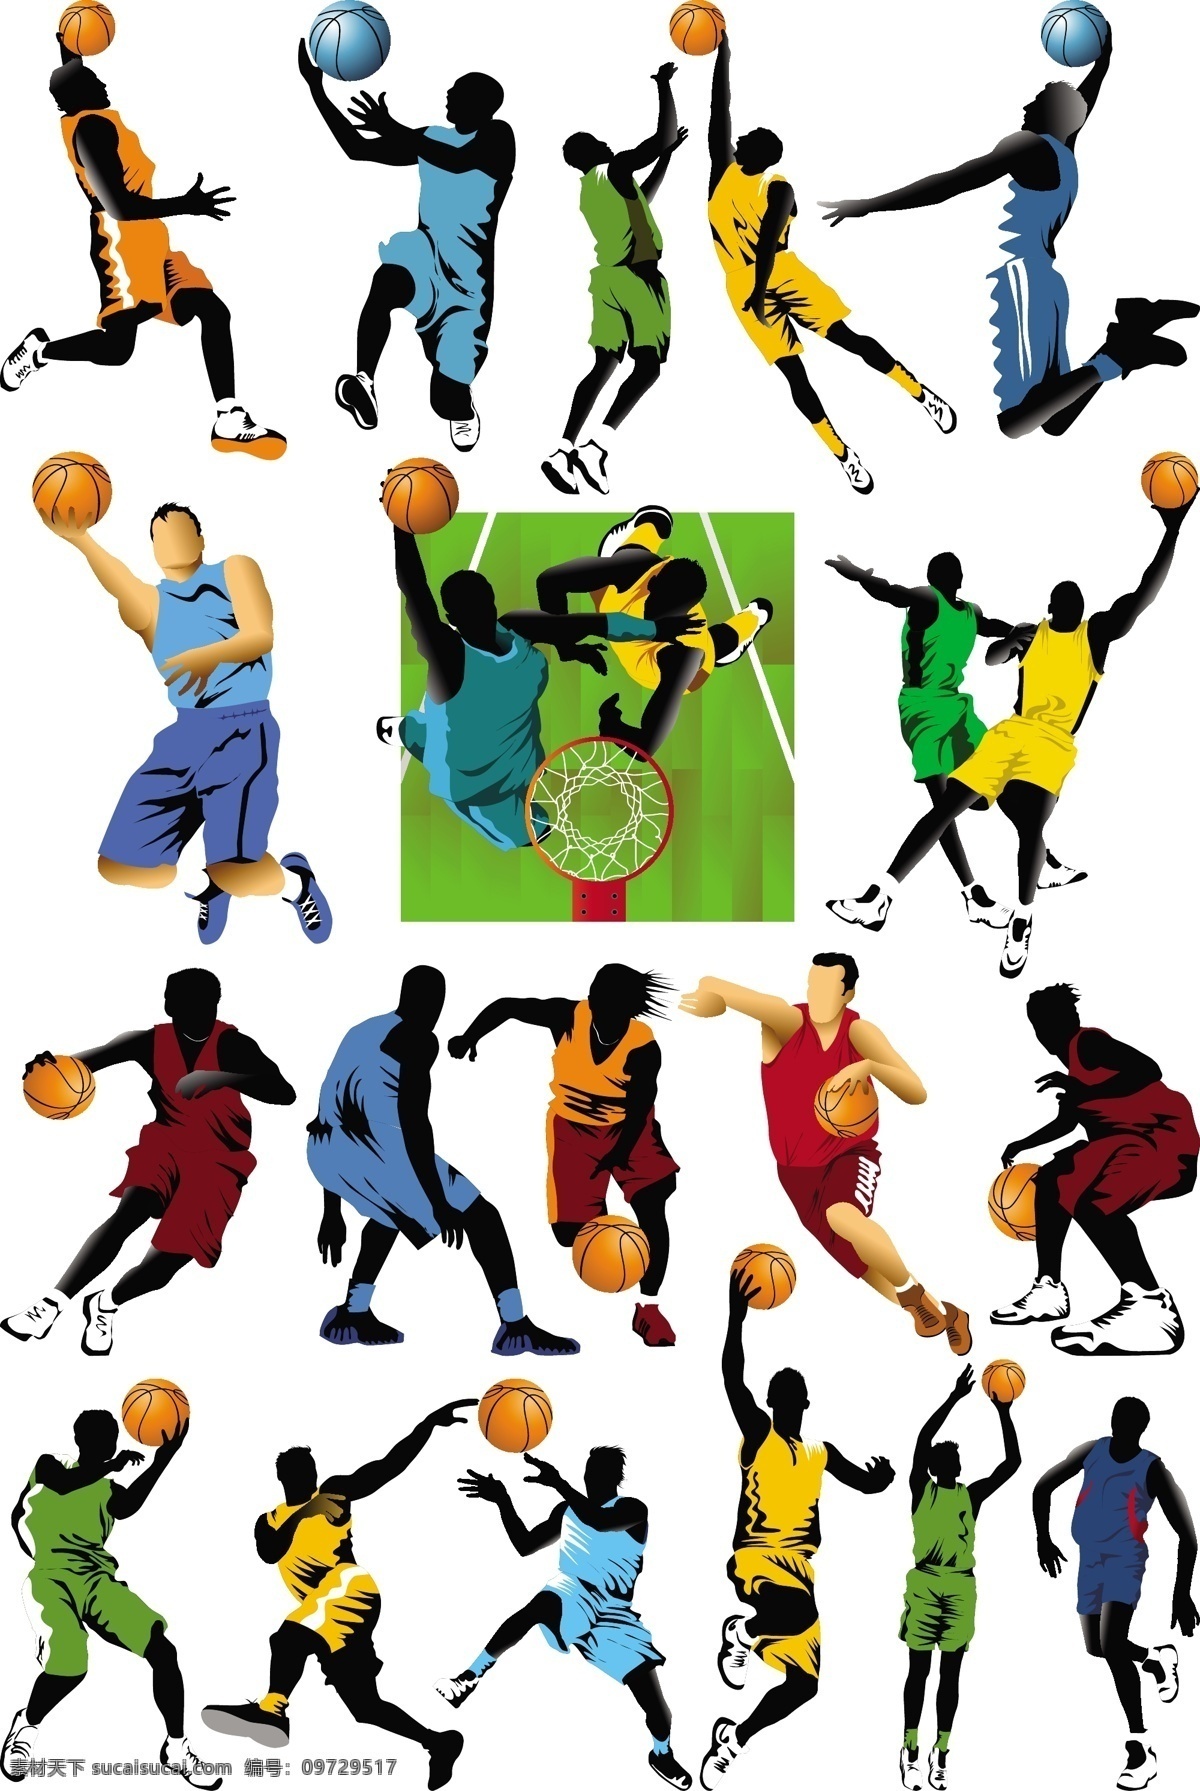 打篮球 剪影 扣篮 篮球 人物 矢量素材 体育 体育运动 投篮 运动员 矢量 模板下载 篮球运动员 运球 跳投 运动 职业人物 文化艺术 psd源文件